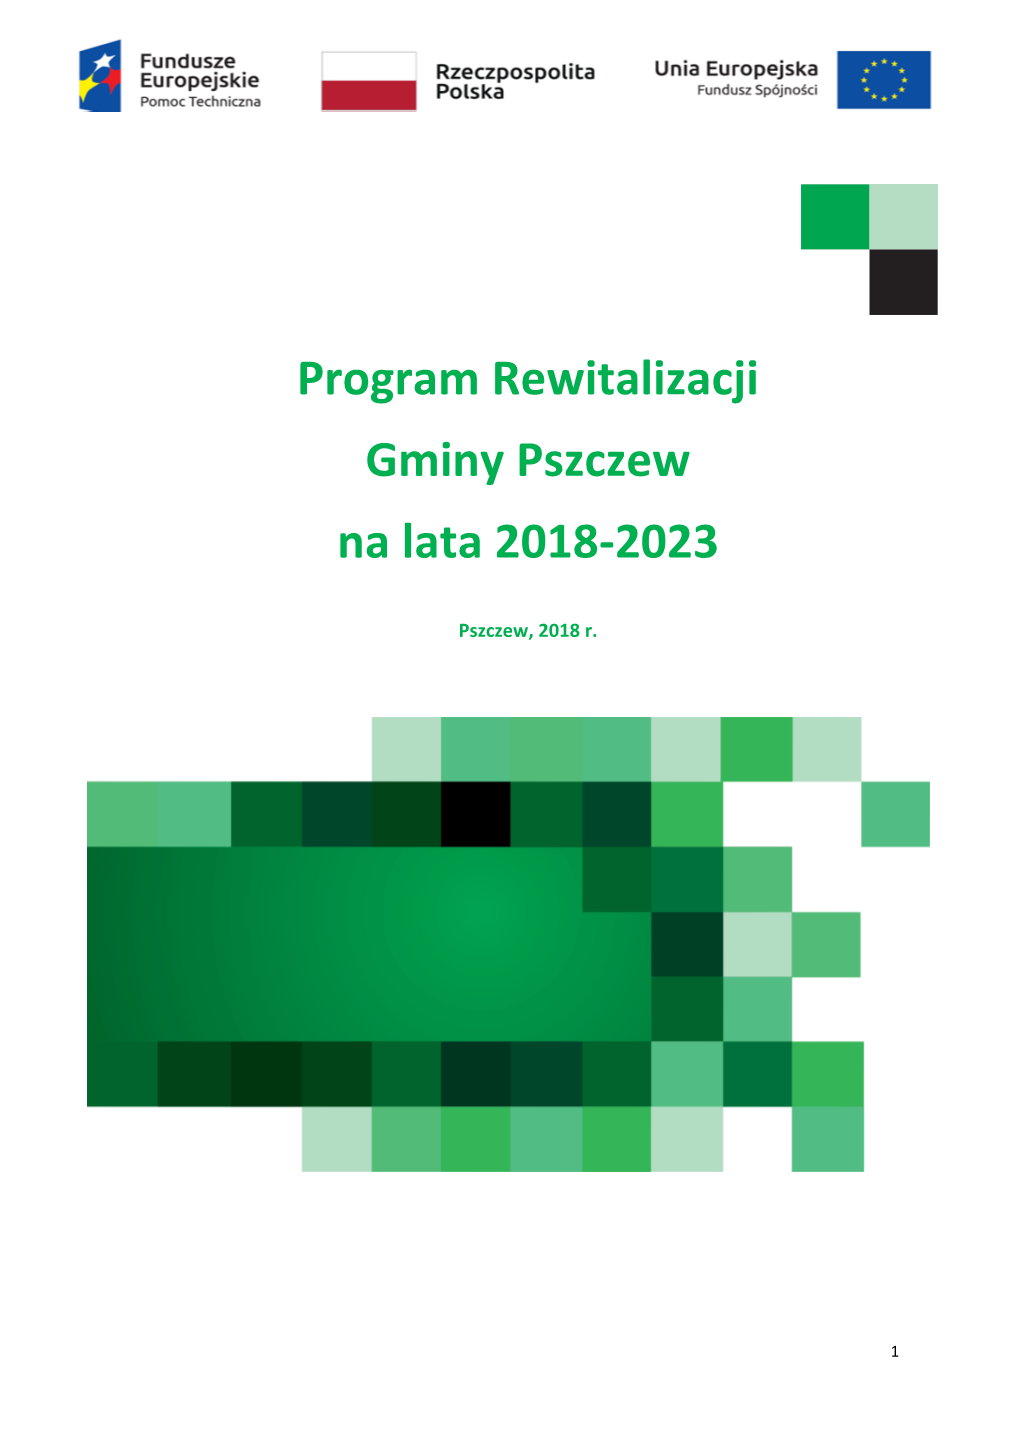 Program Rewitalizacji Gminy Pszczew Na Lata 2018-2023